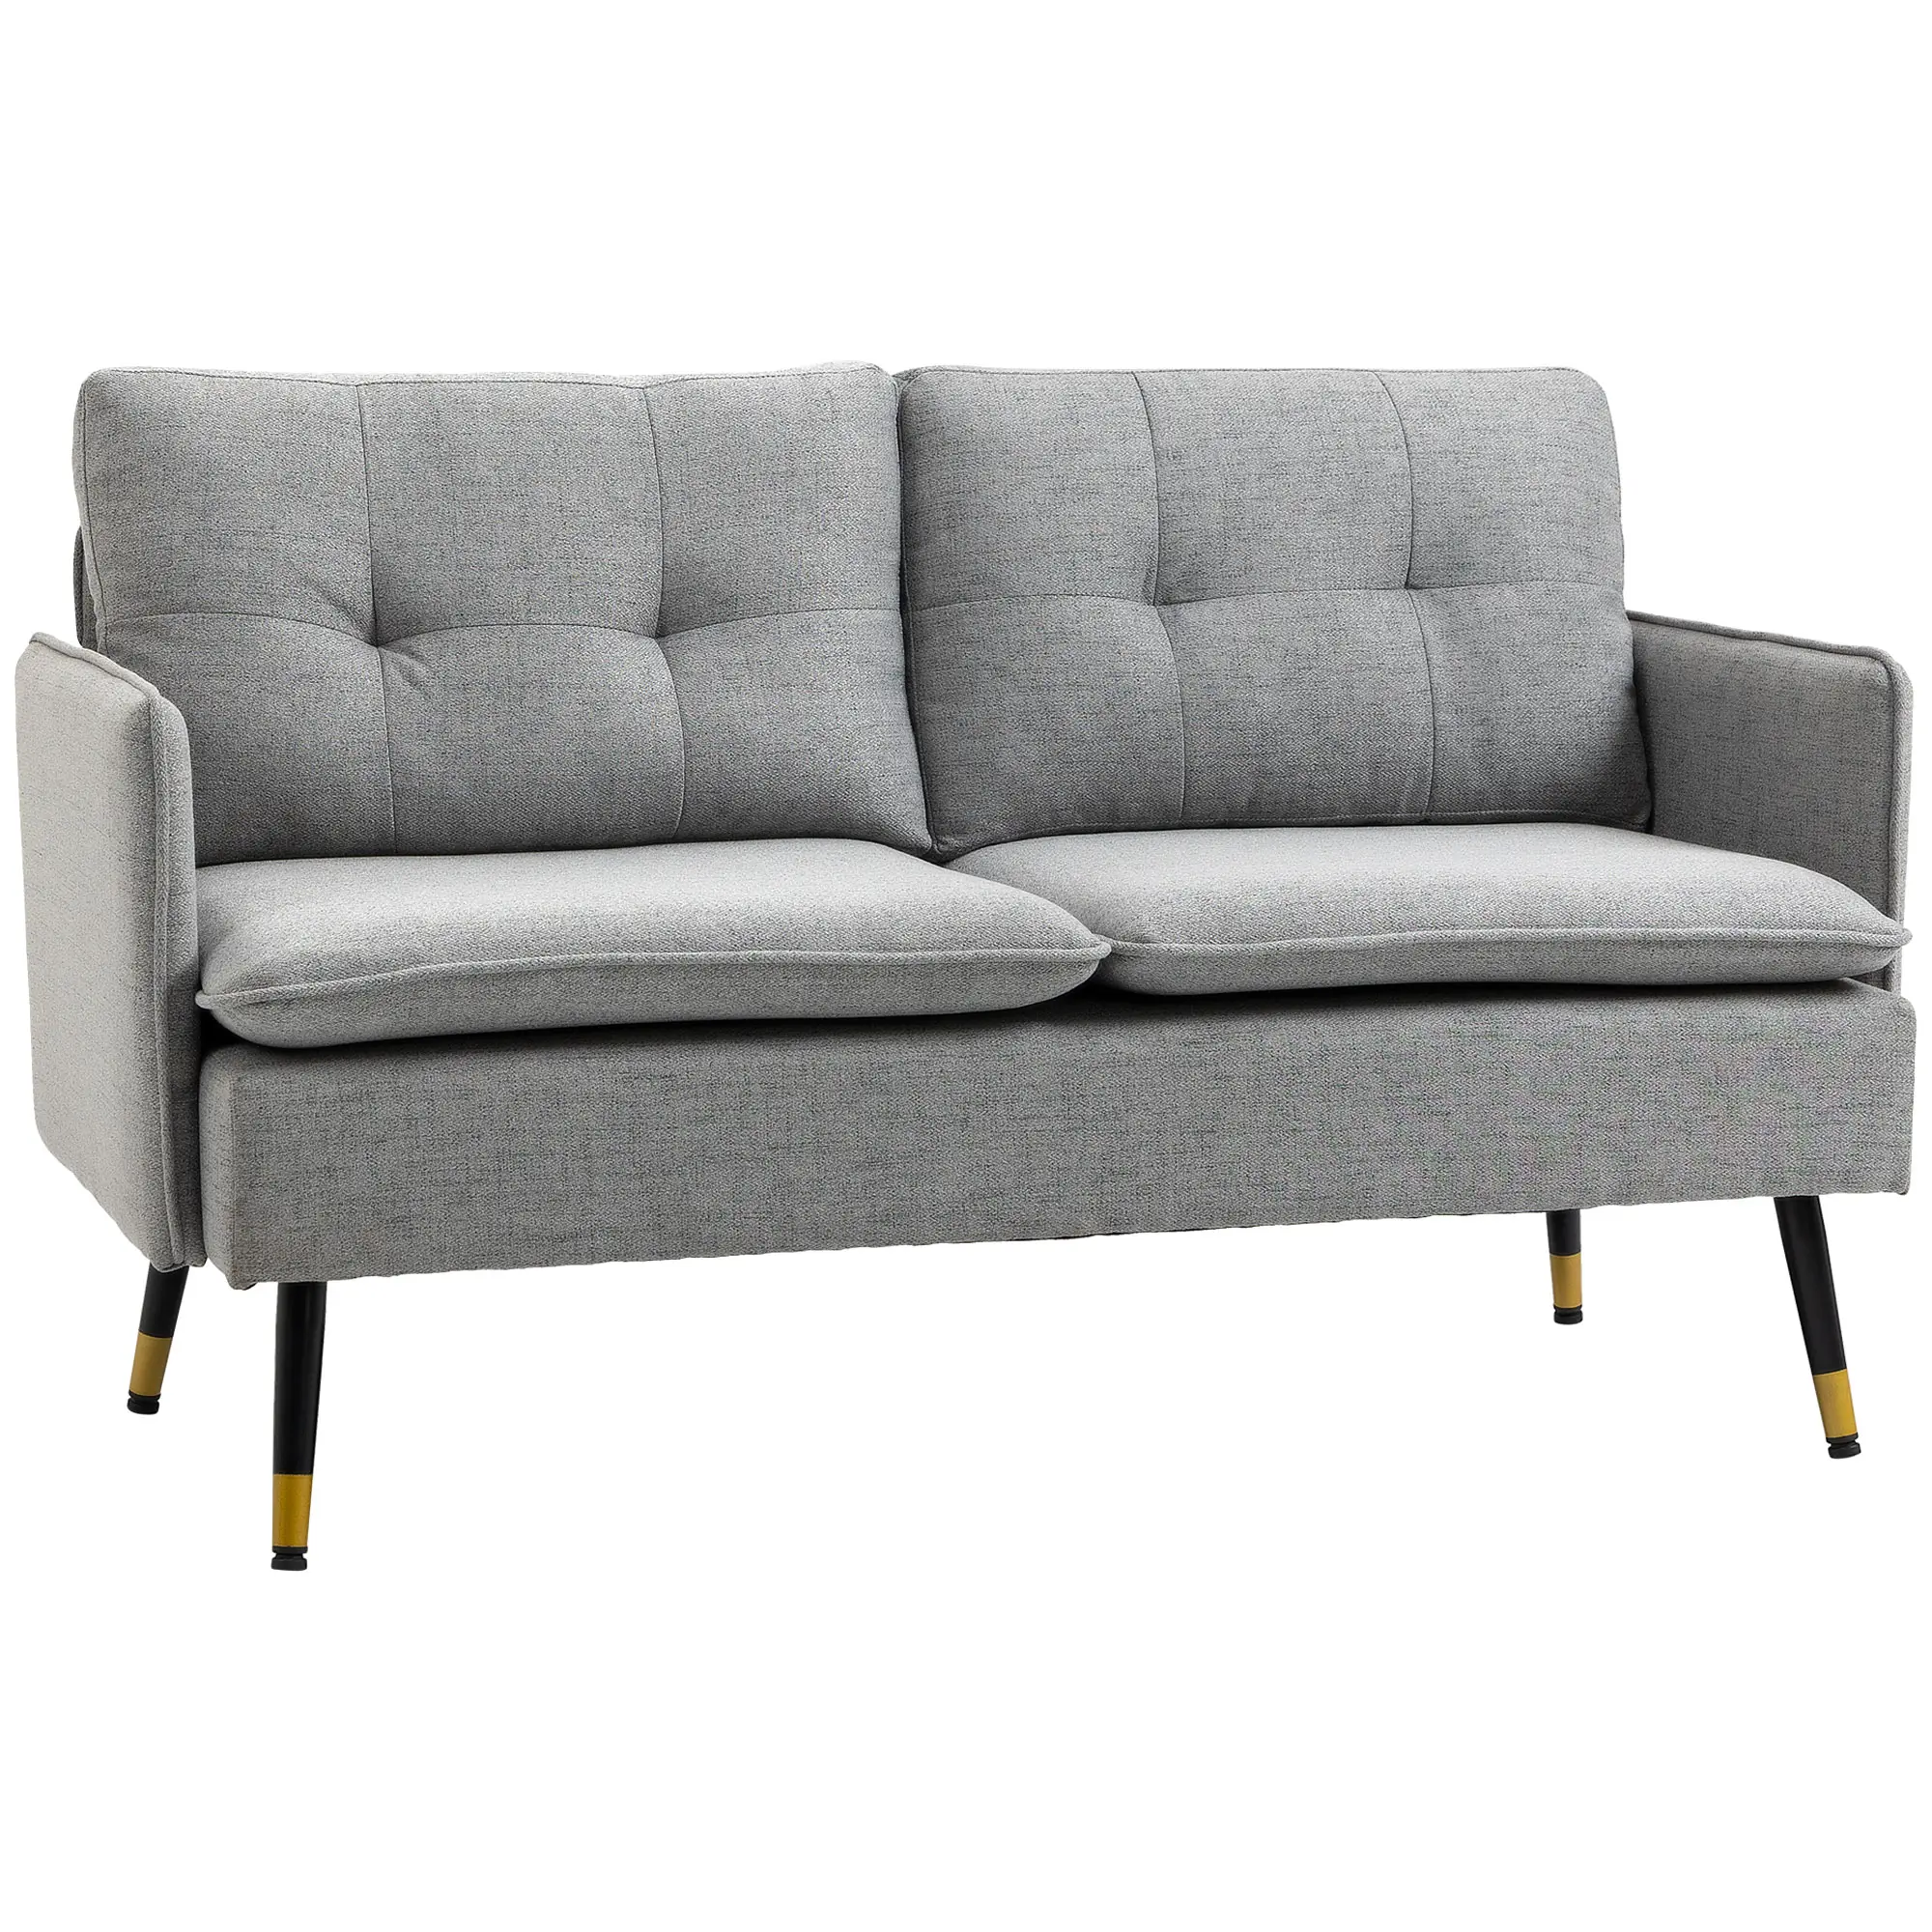 839-622V00GY Zweisitzer Sofa